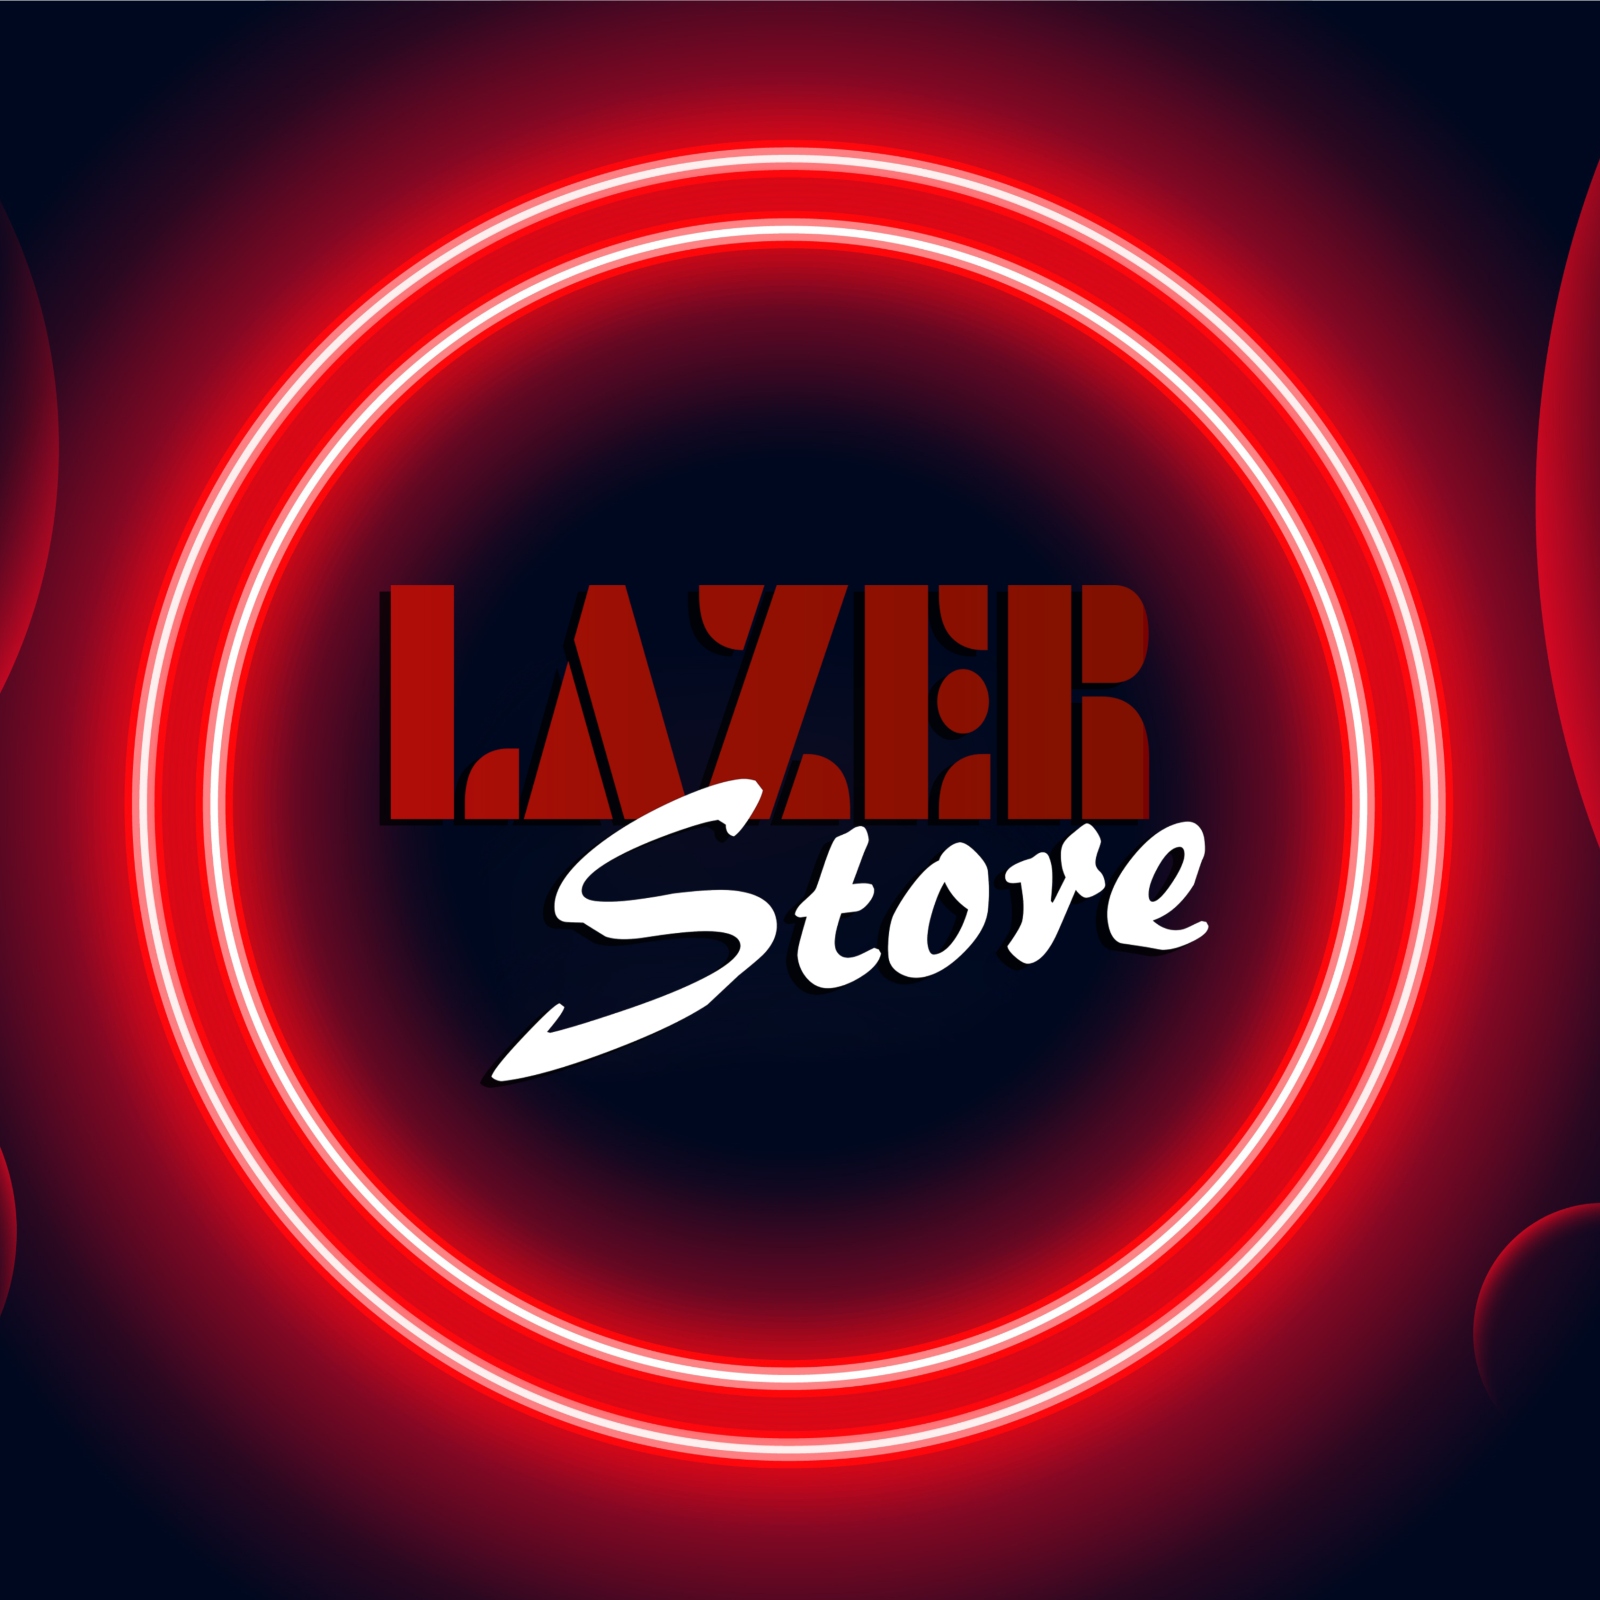 LazerStore